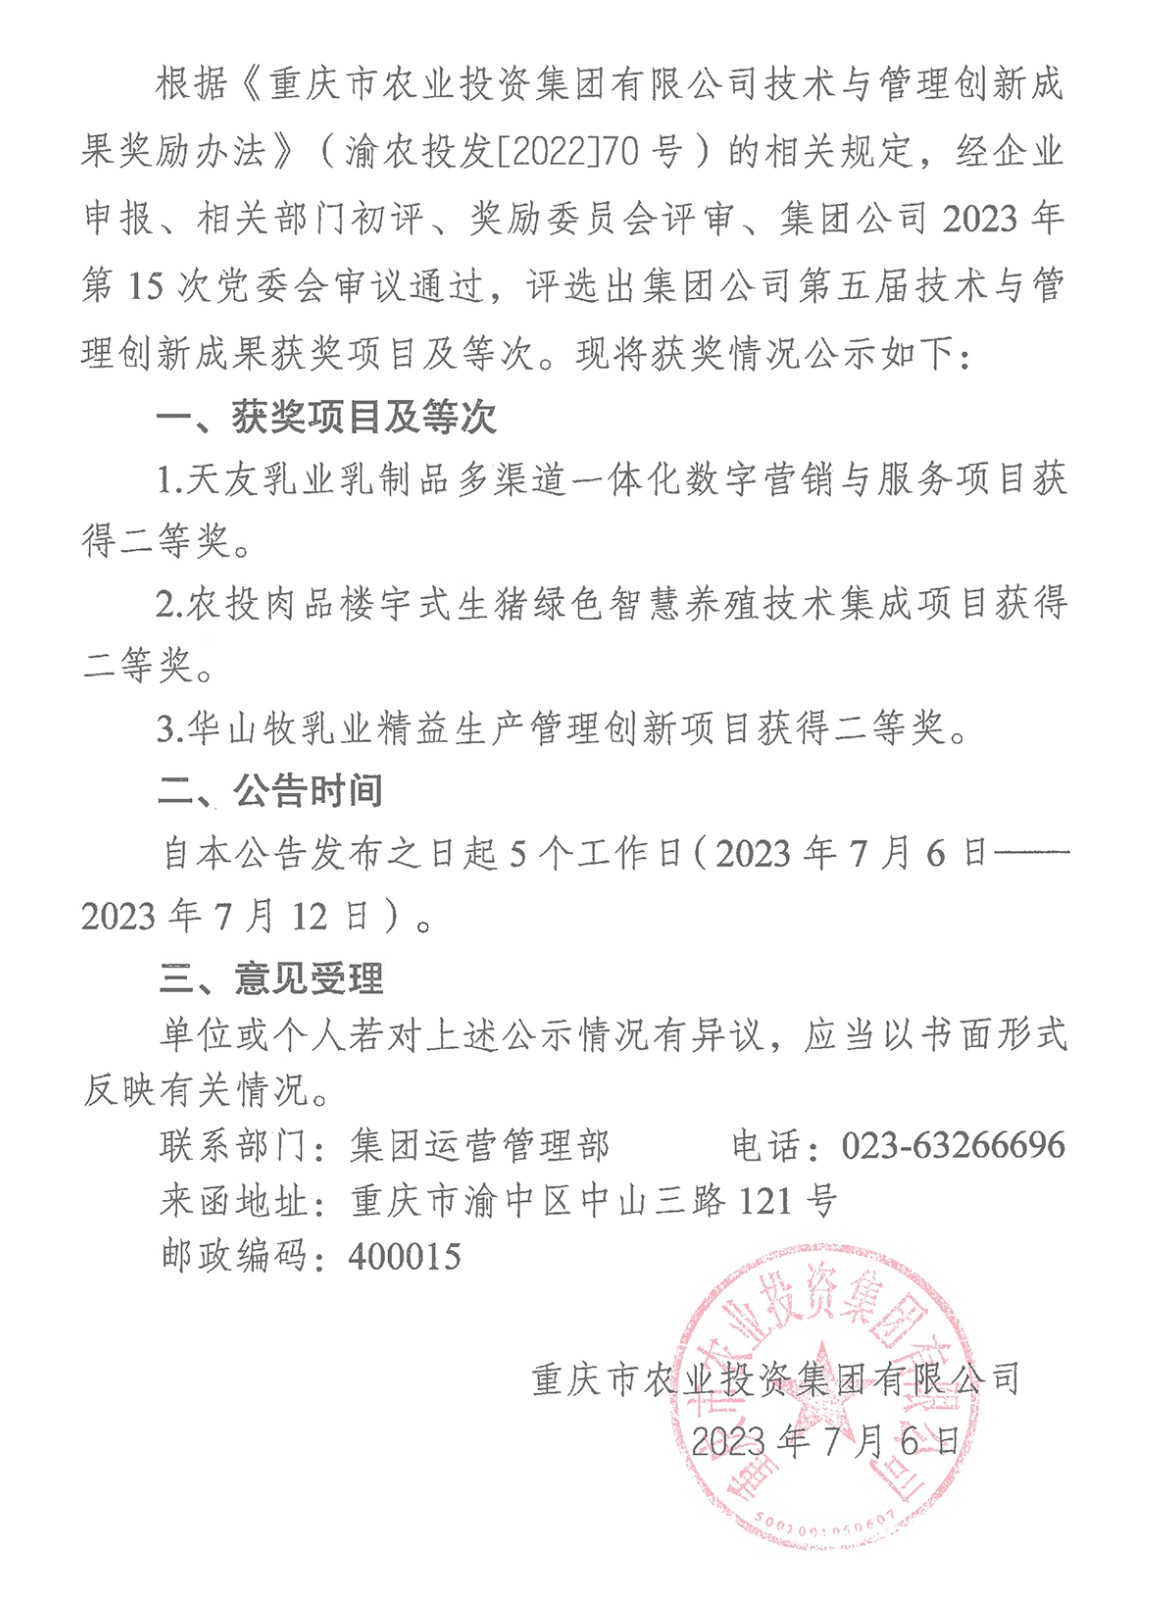 070615442100_0泛亚体育中国有限公司关于2023年第五届技术与管理创新成果评选奖励有关情况的公告_1.Jpeg